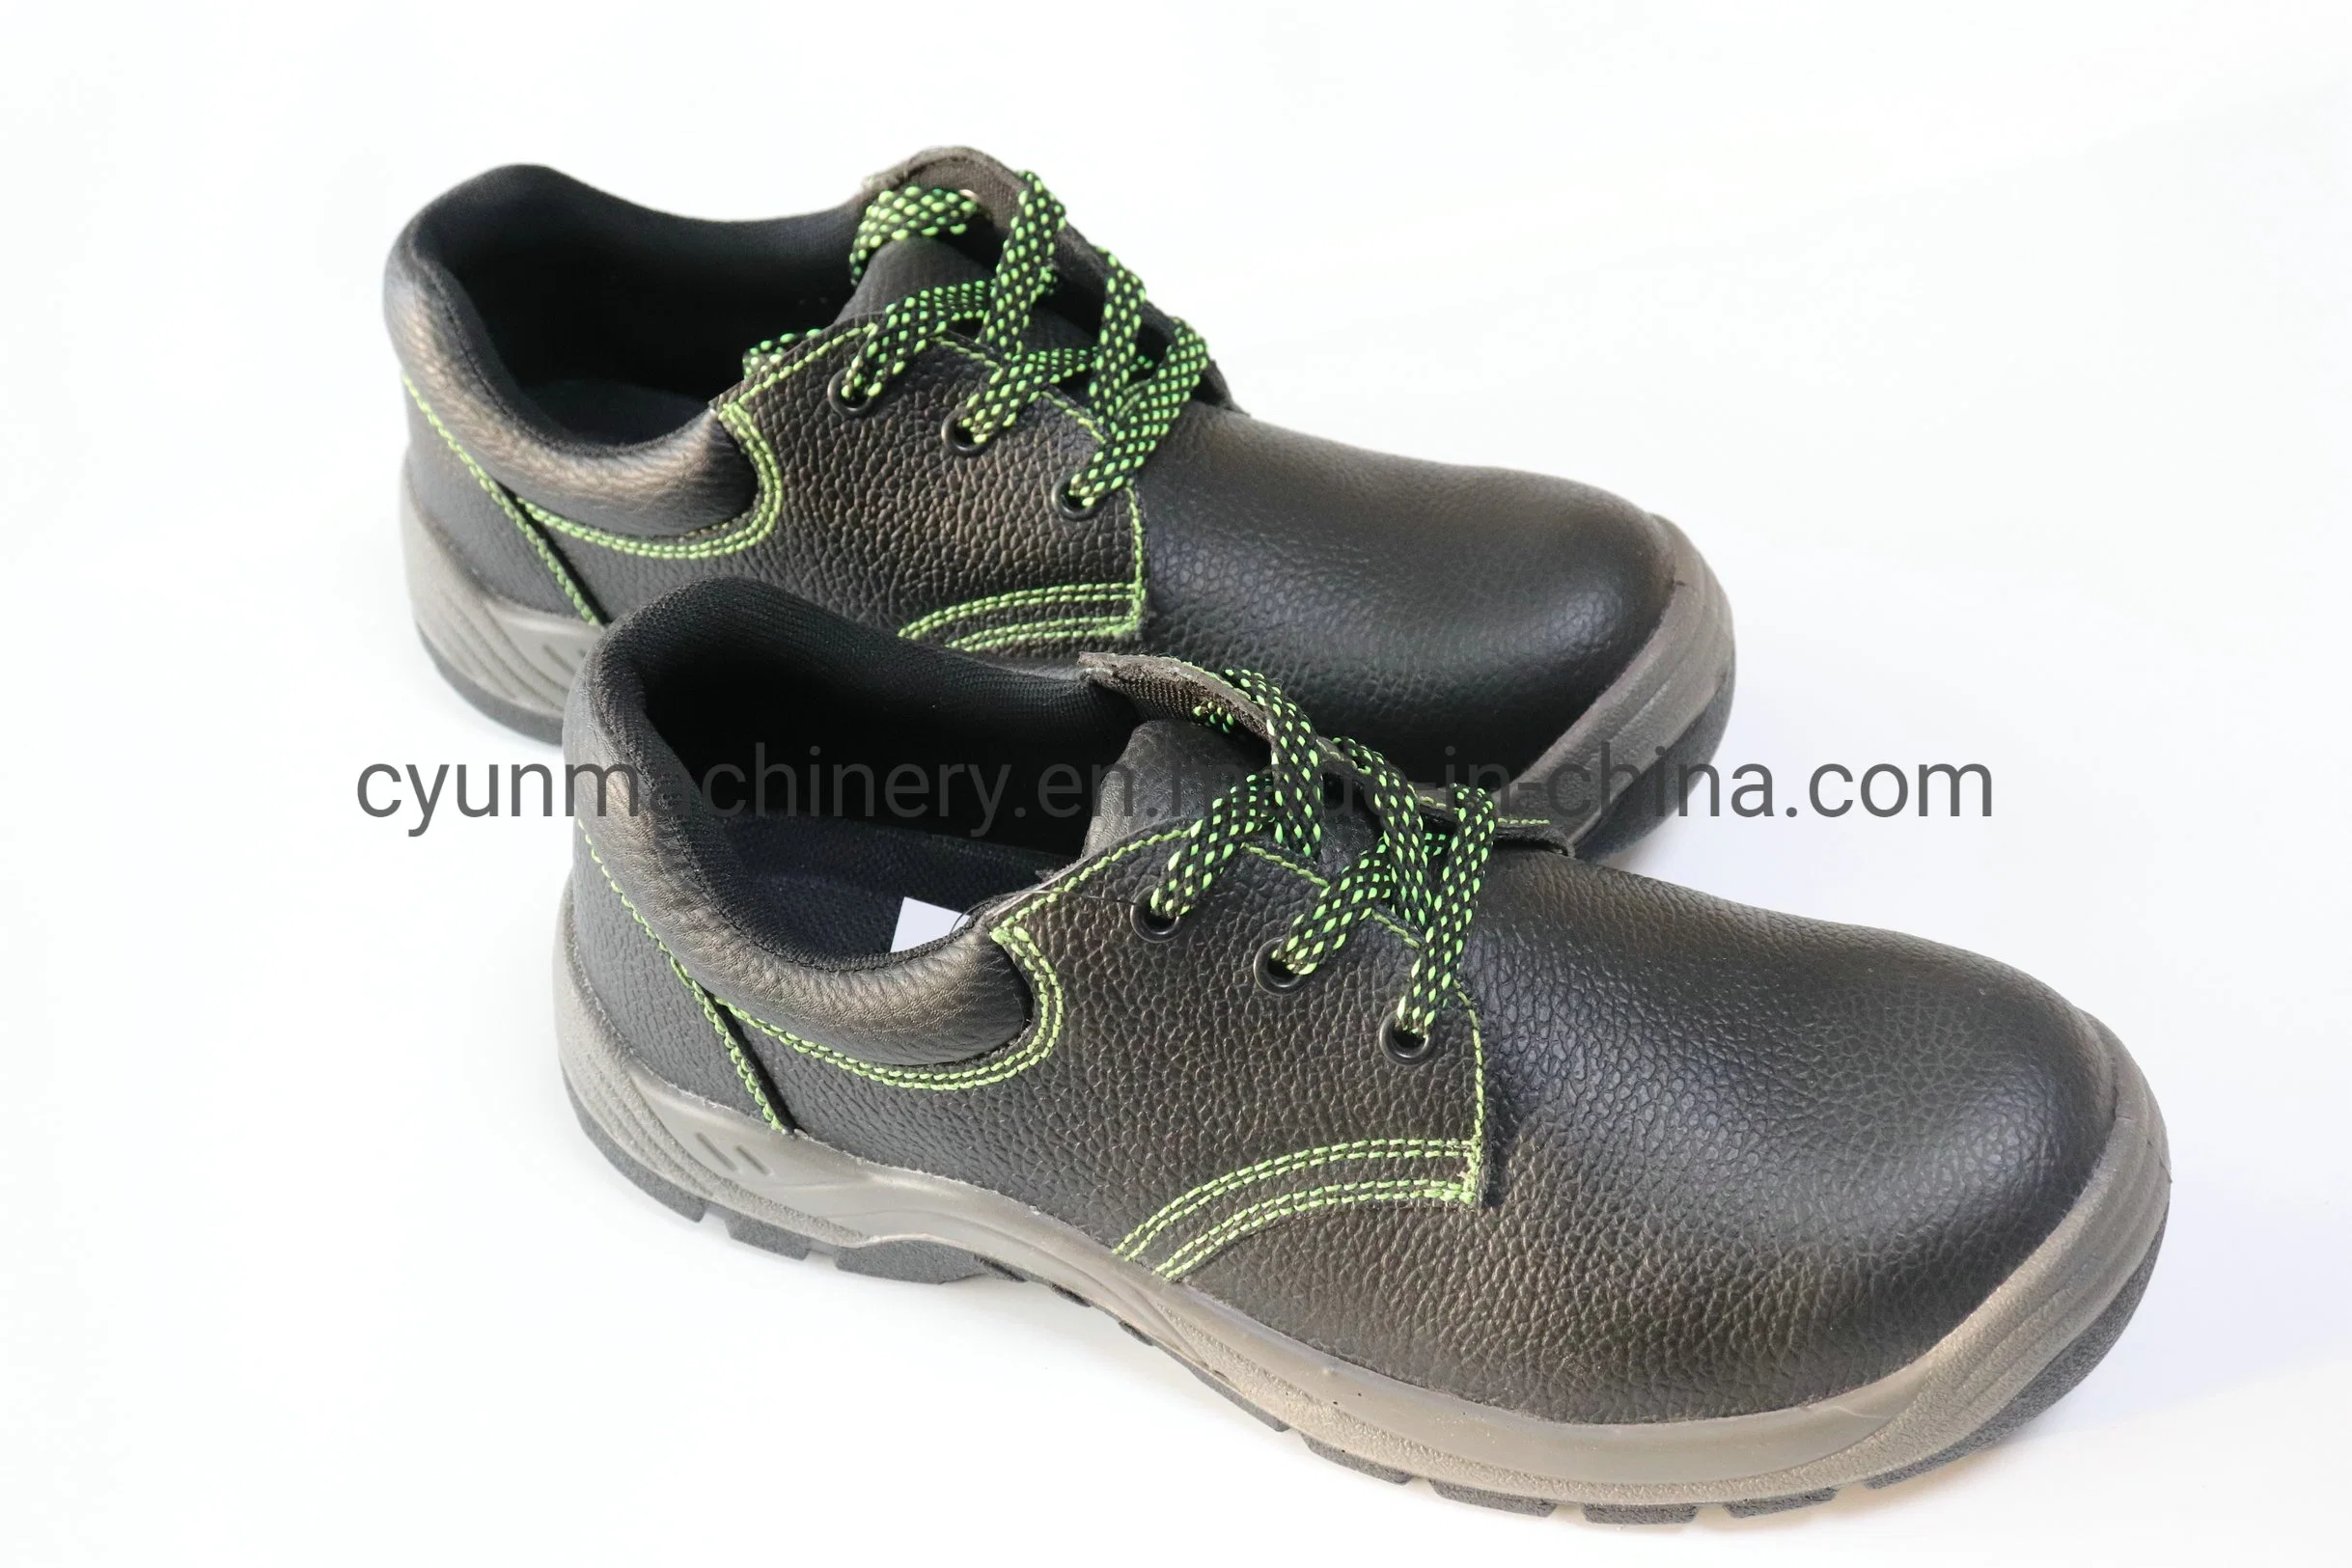 La vie quotidienne de protection Anti-Piercing Unisex Sneakers Travaux de sécurité Chaussures de sécurité industrielle d'amorçage